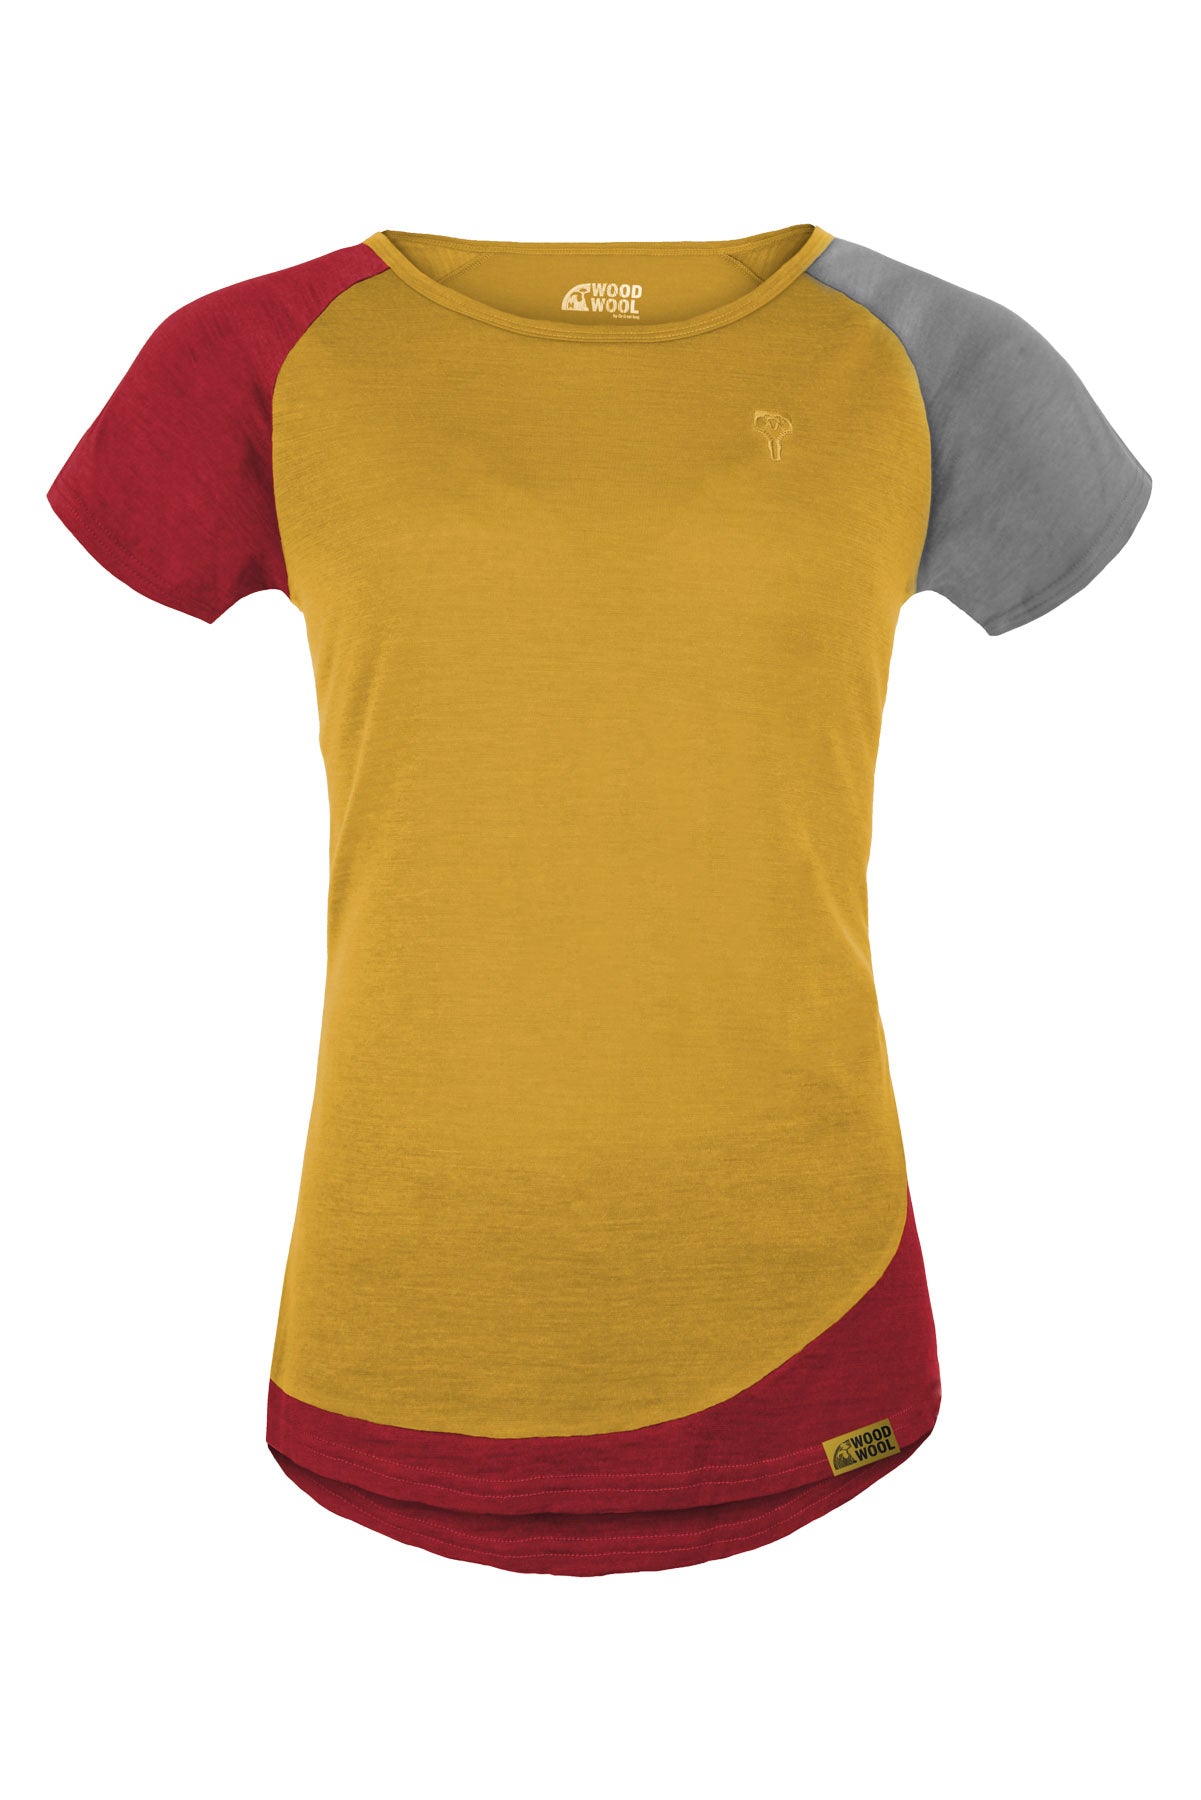 WoodWool T-Shirt Lady Janeway - Daisy Daze Yellow